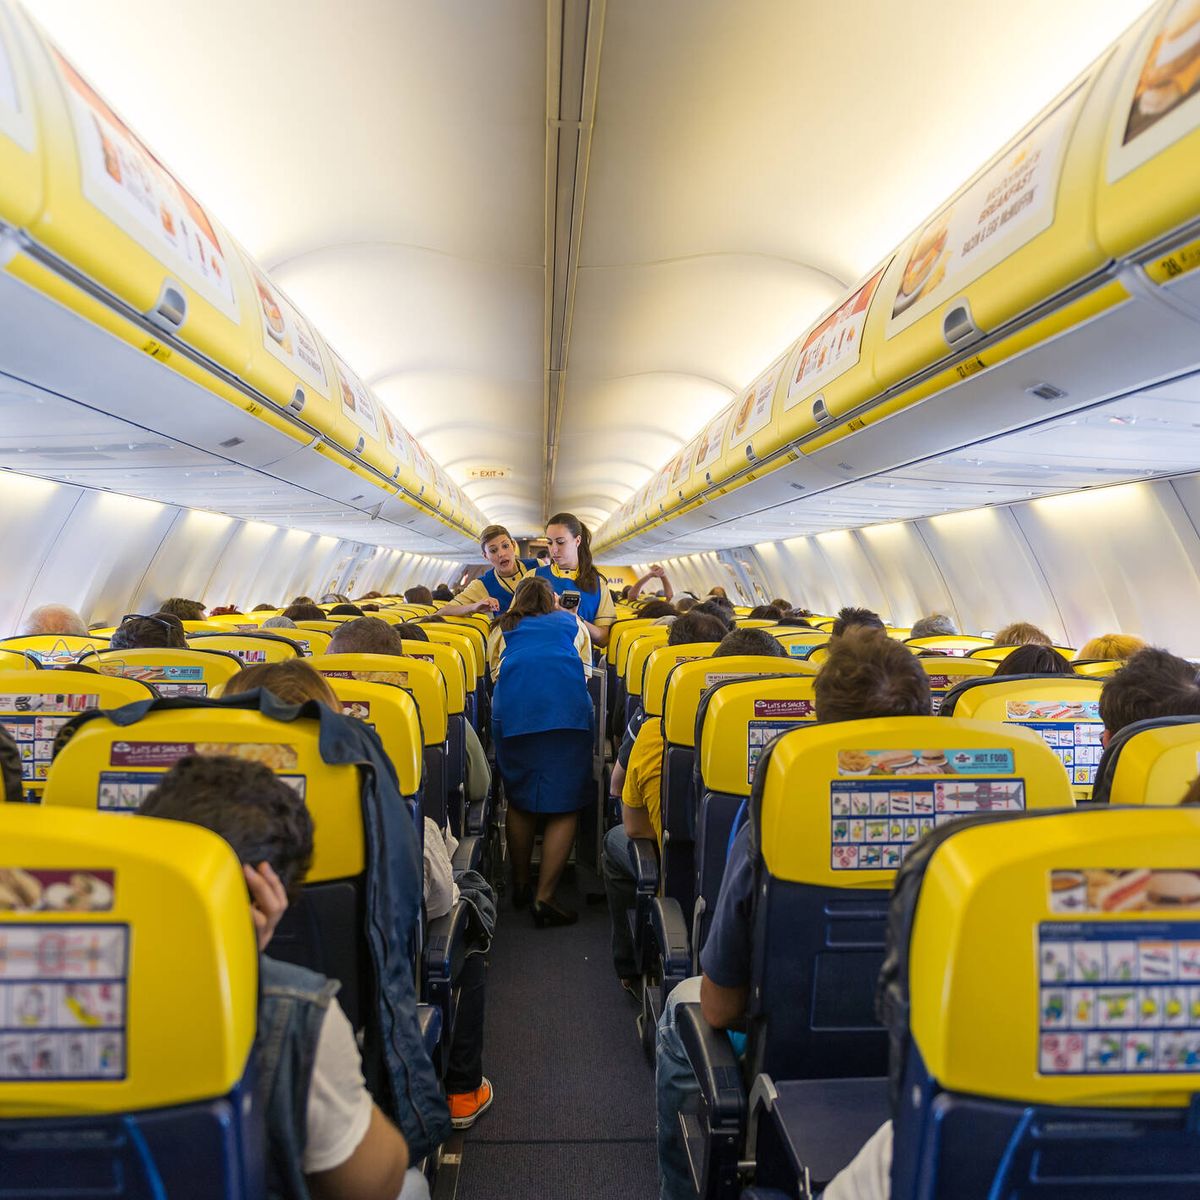 Equipaje de mano Ryanair - trucos, medidas y opciones - Mi baúl de